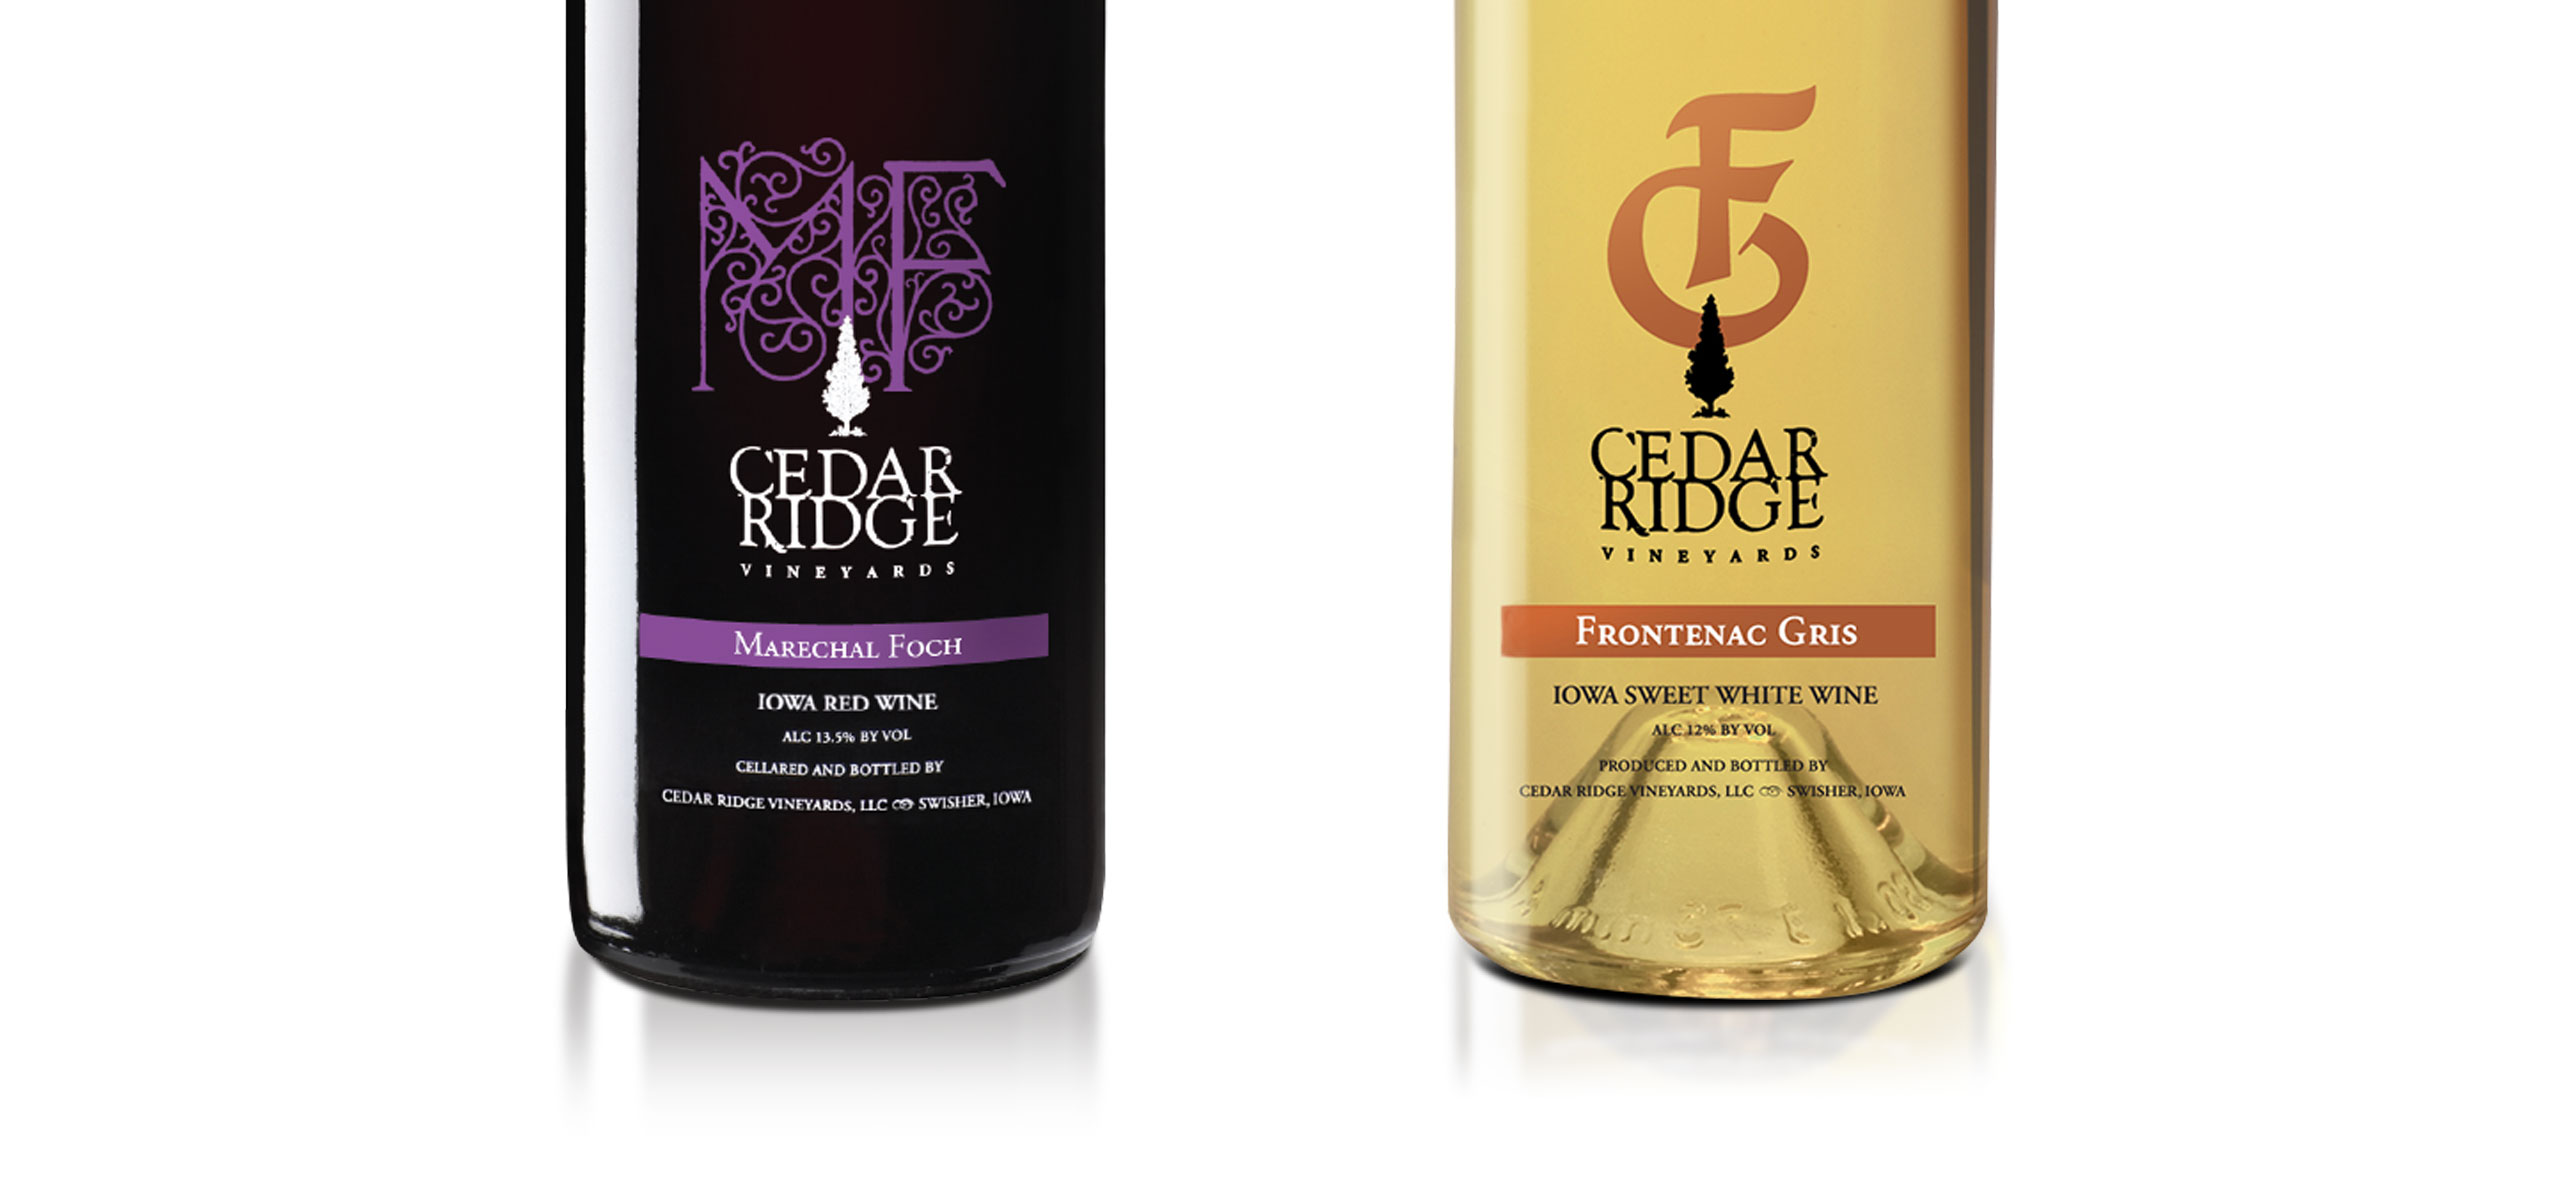 Cedar Ridge wine labels on bottles